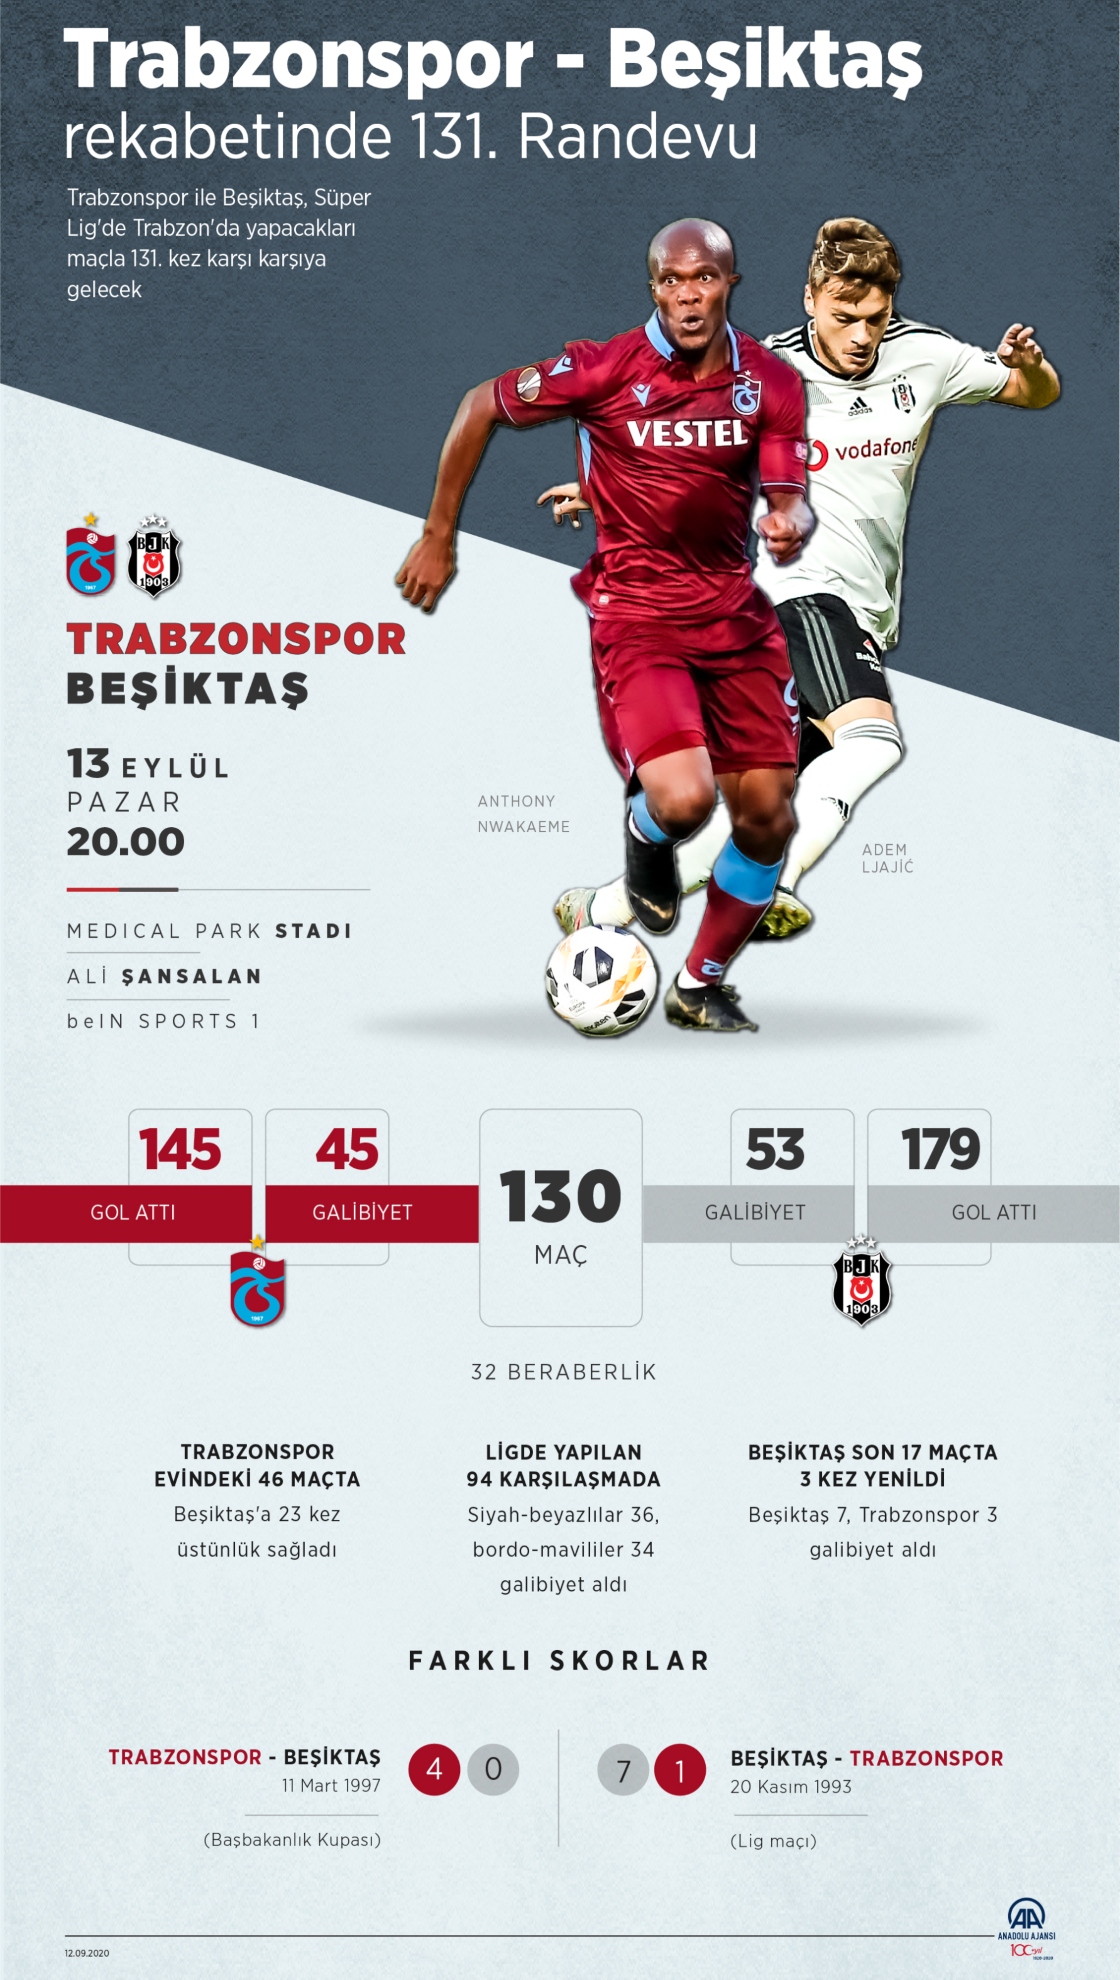 Beşiktaş-Trabzonspor rekabetinde 131. randevu